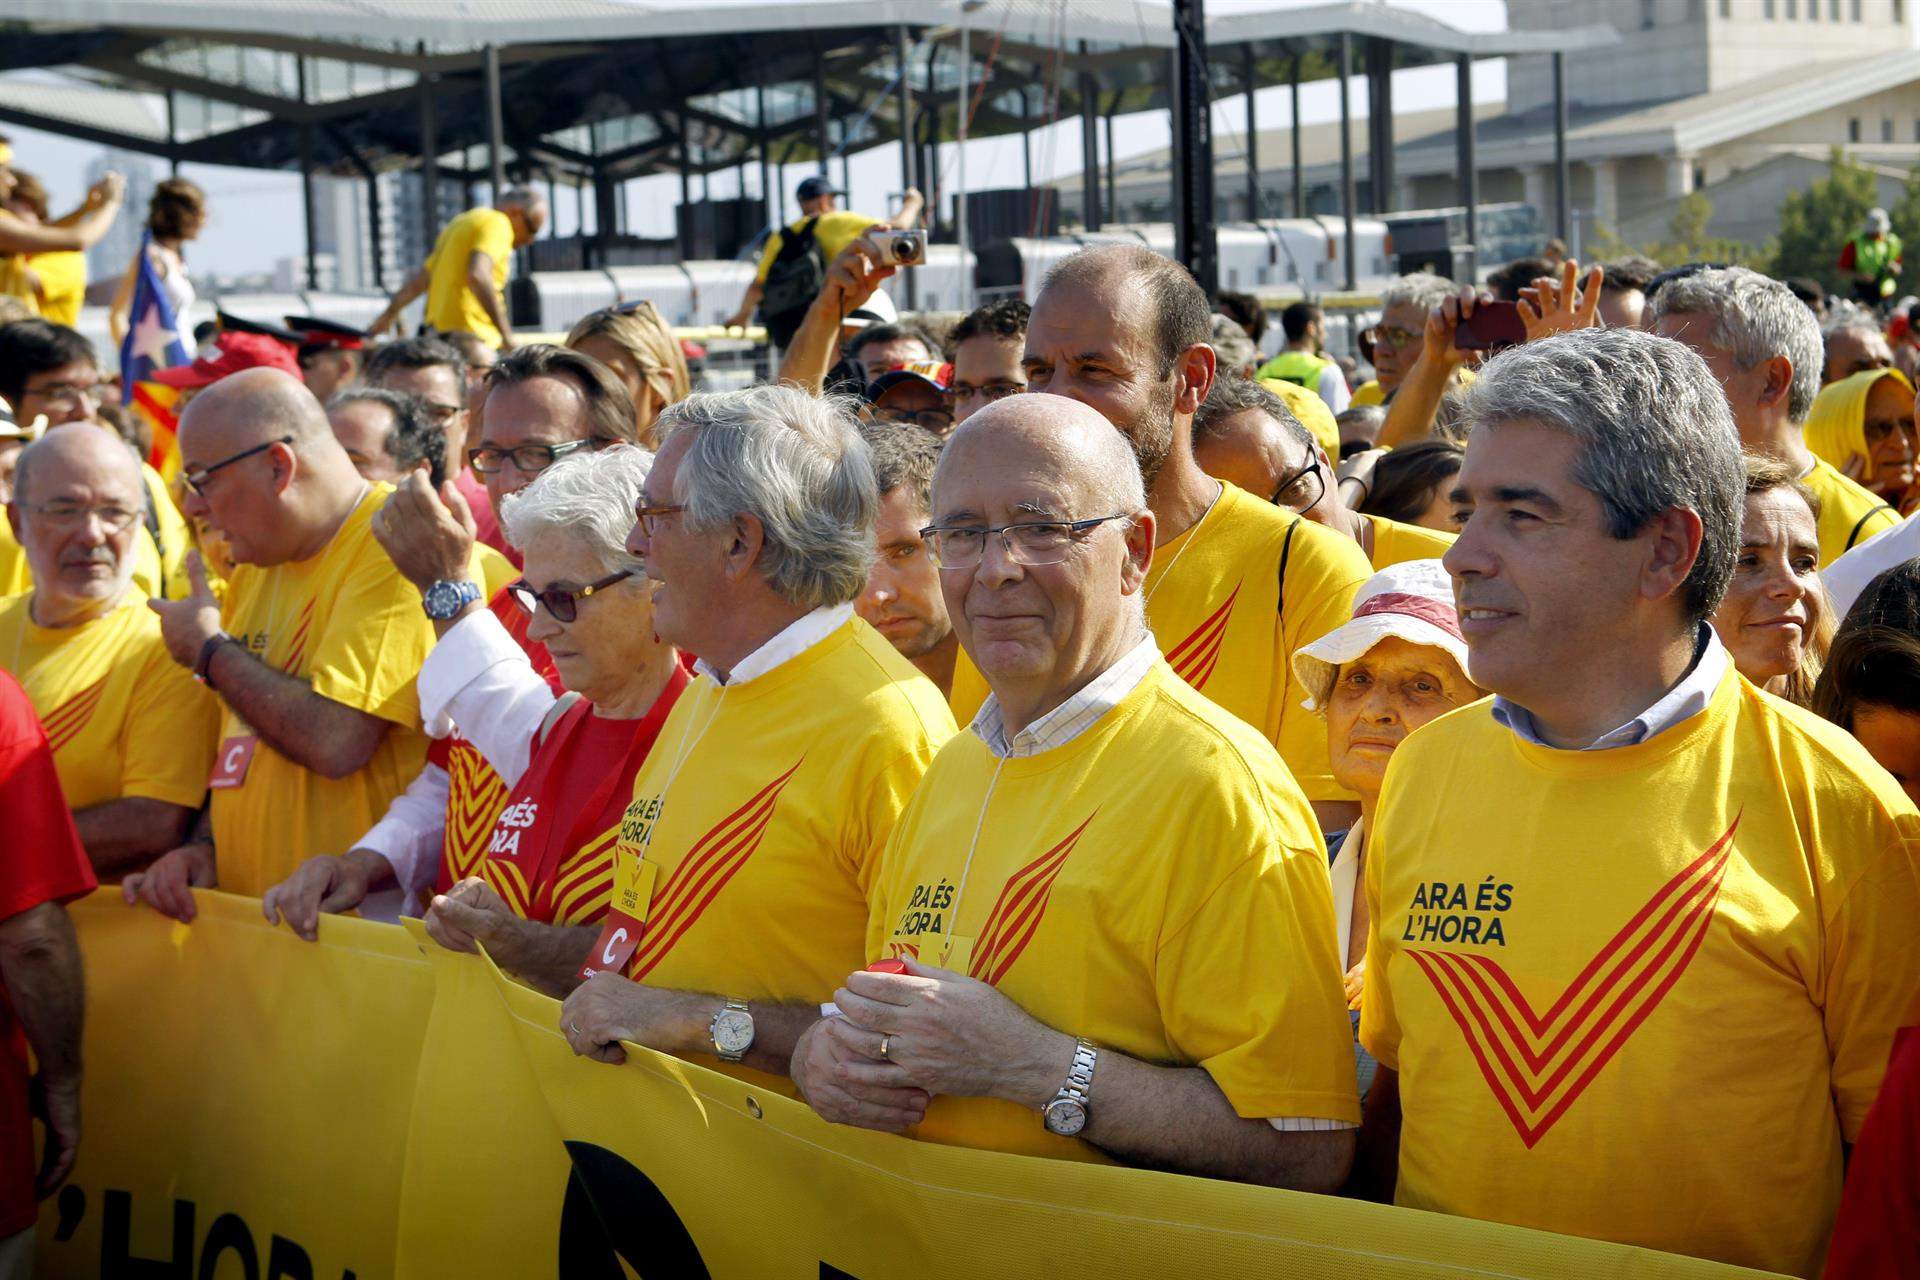 El mundo político y cultural dice adiós a Joan Rigol, un histórico de Unió comprometido con Catalunya